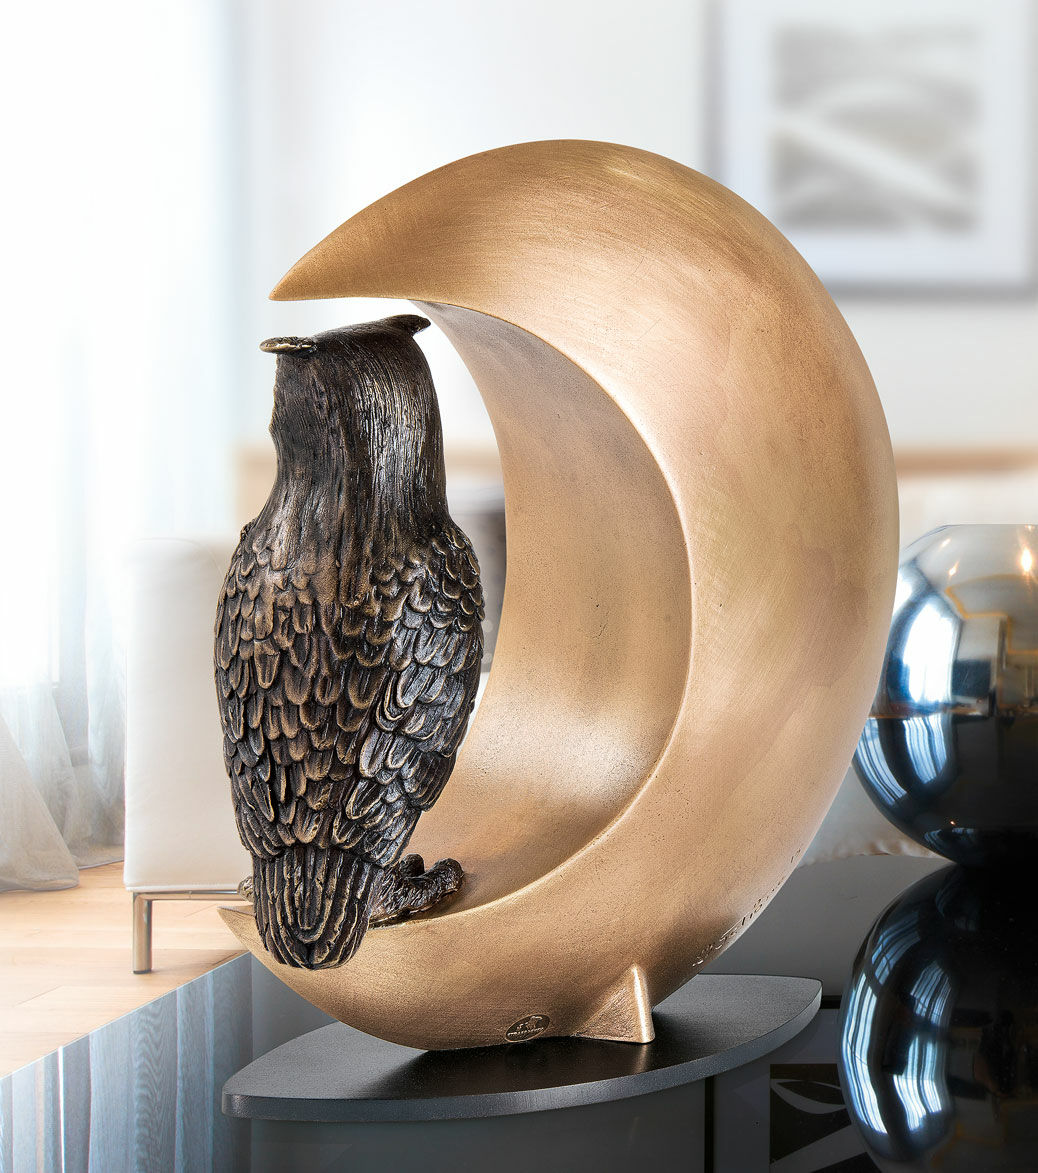 Sculpture "Night Owl", bronze by Thomas Schöne